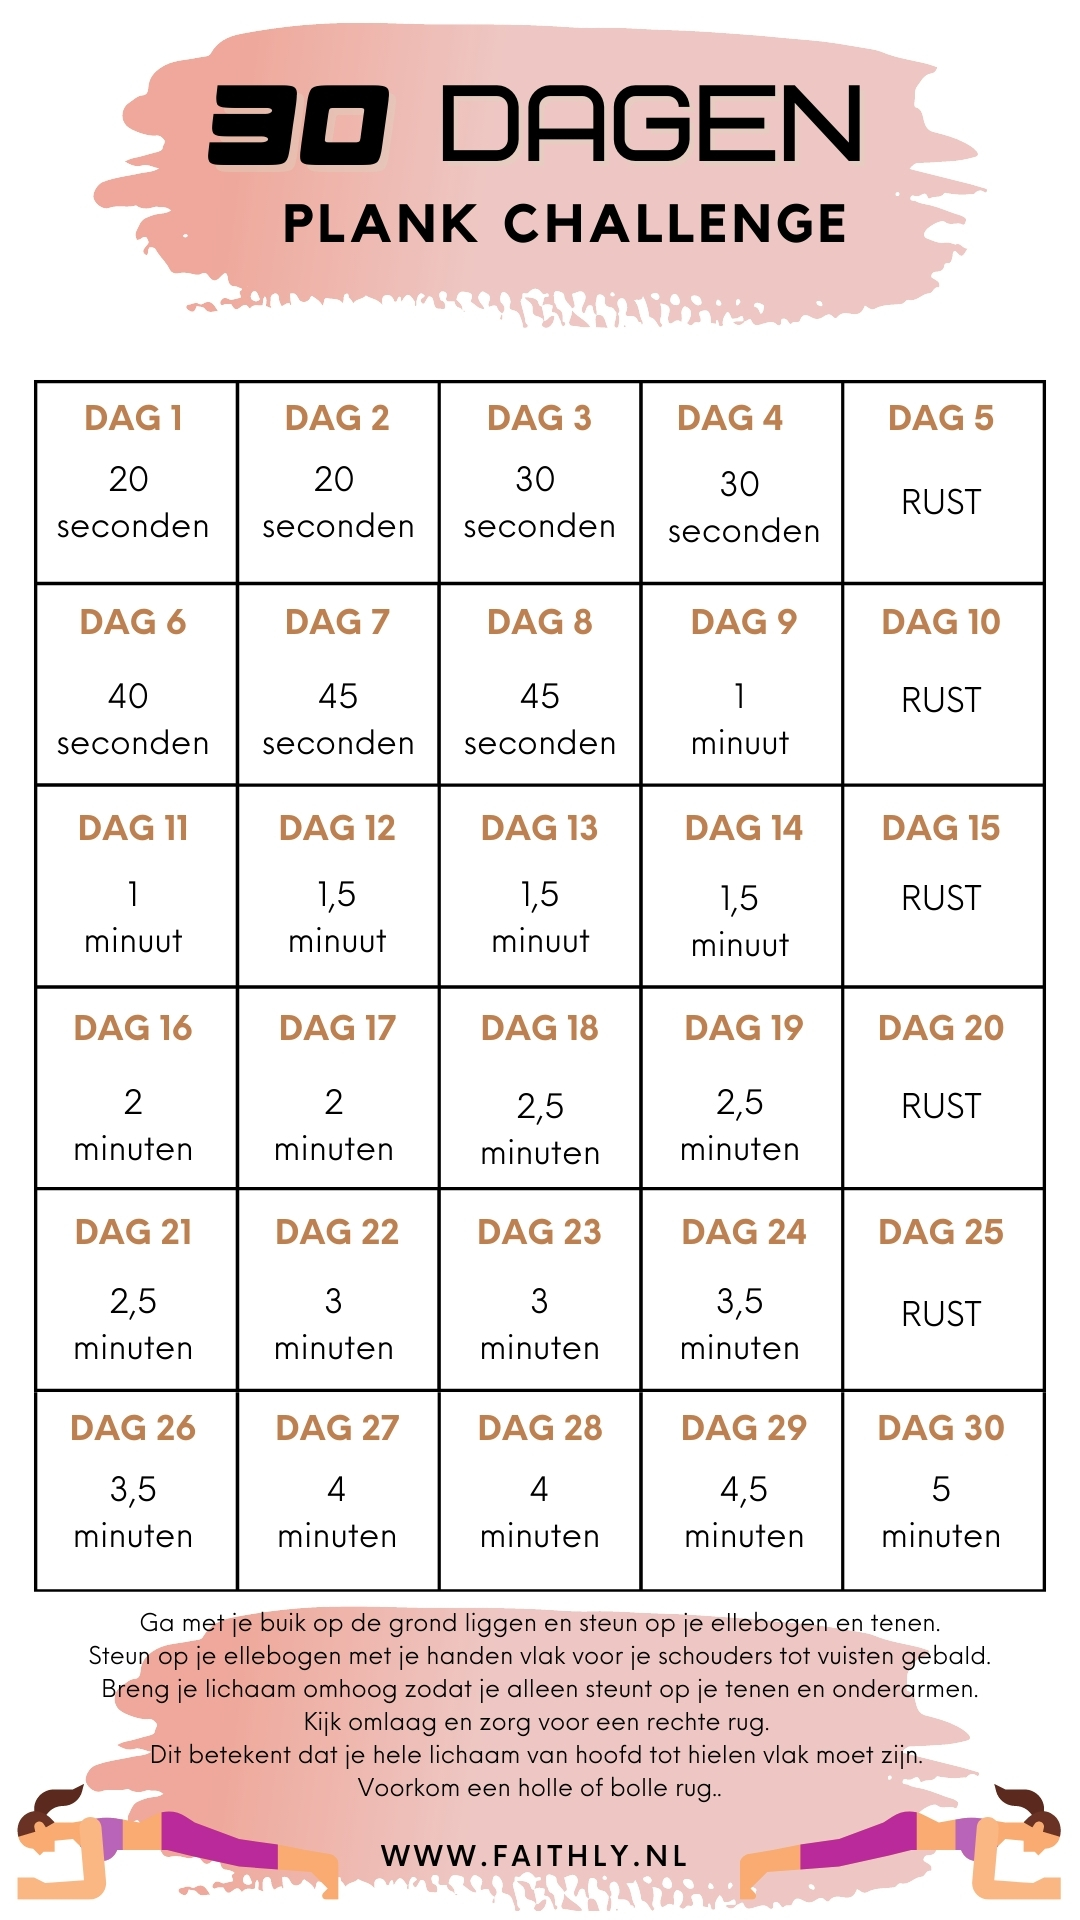 30 dagen fitness challenge - Faithly.nl